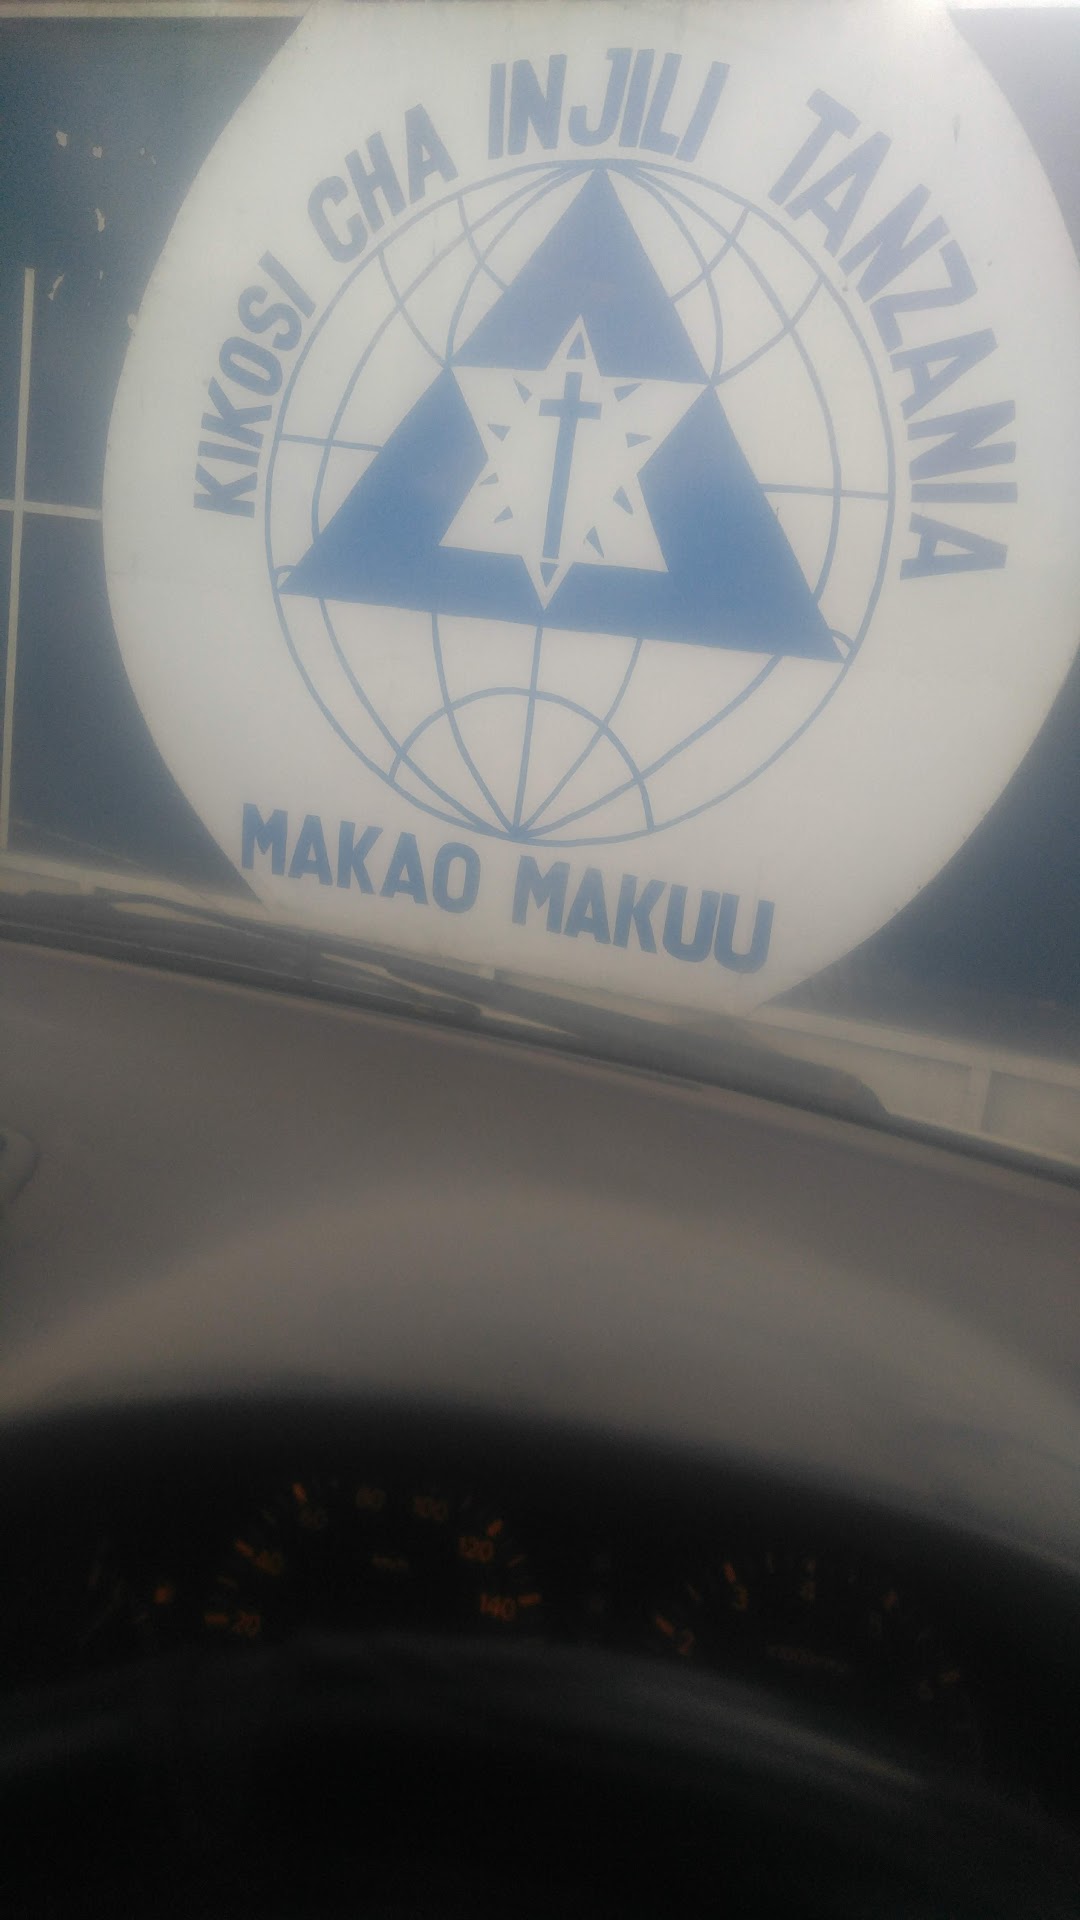 Kikosi Cha Injili Tanzania